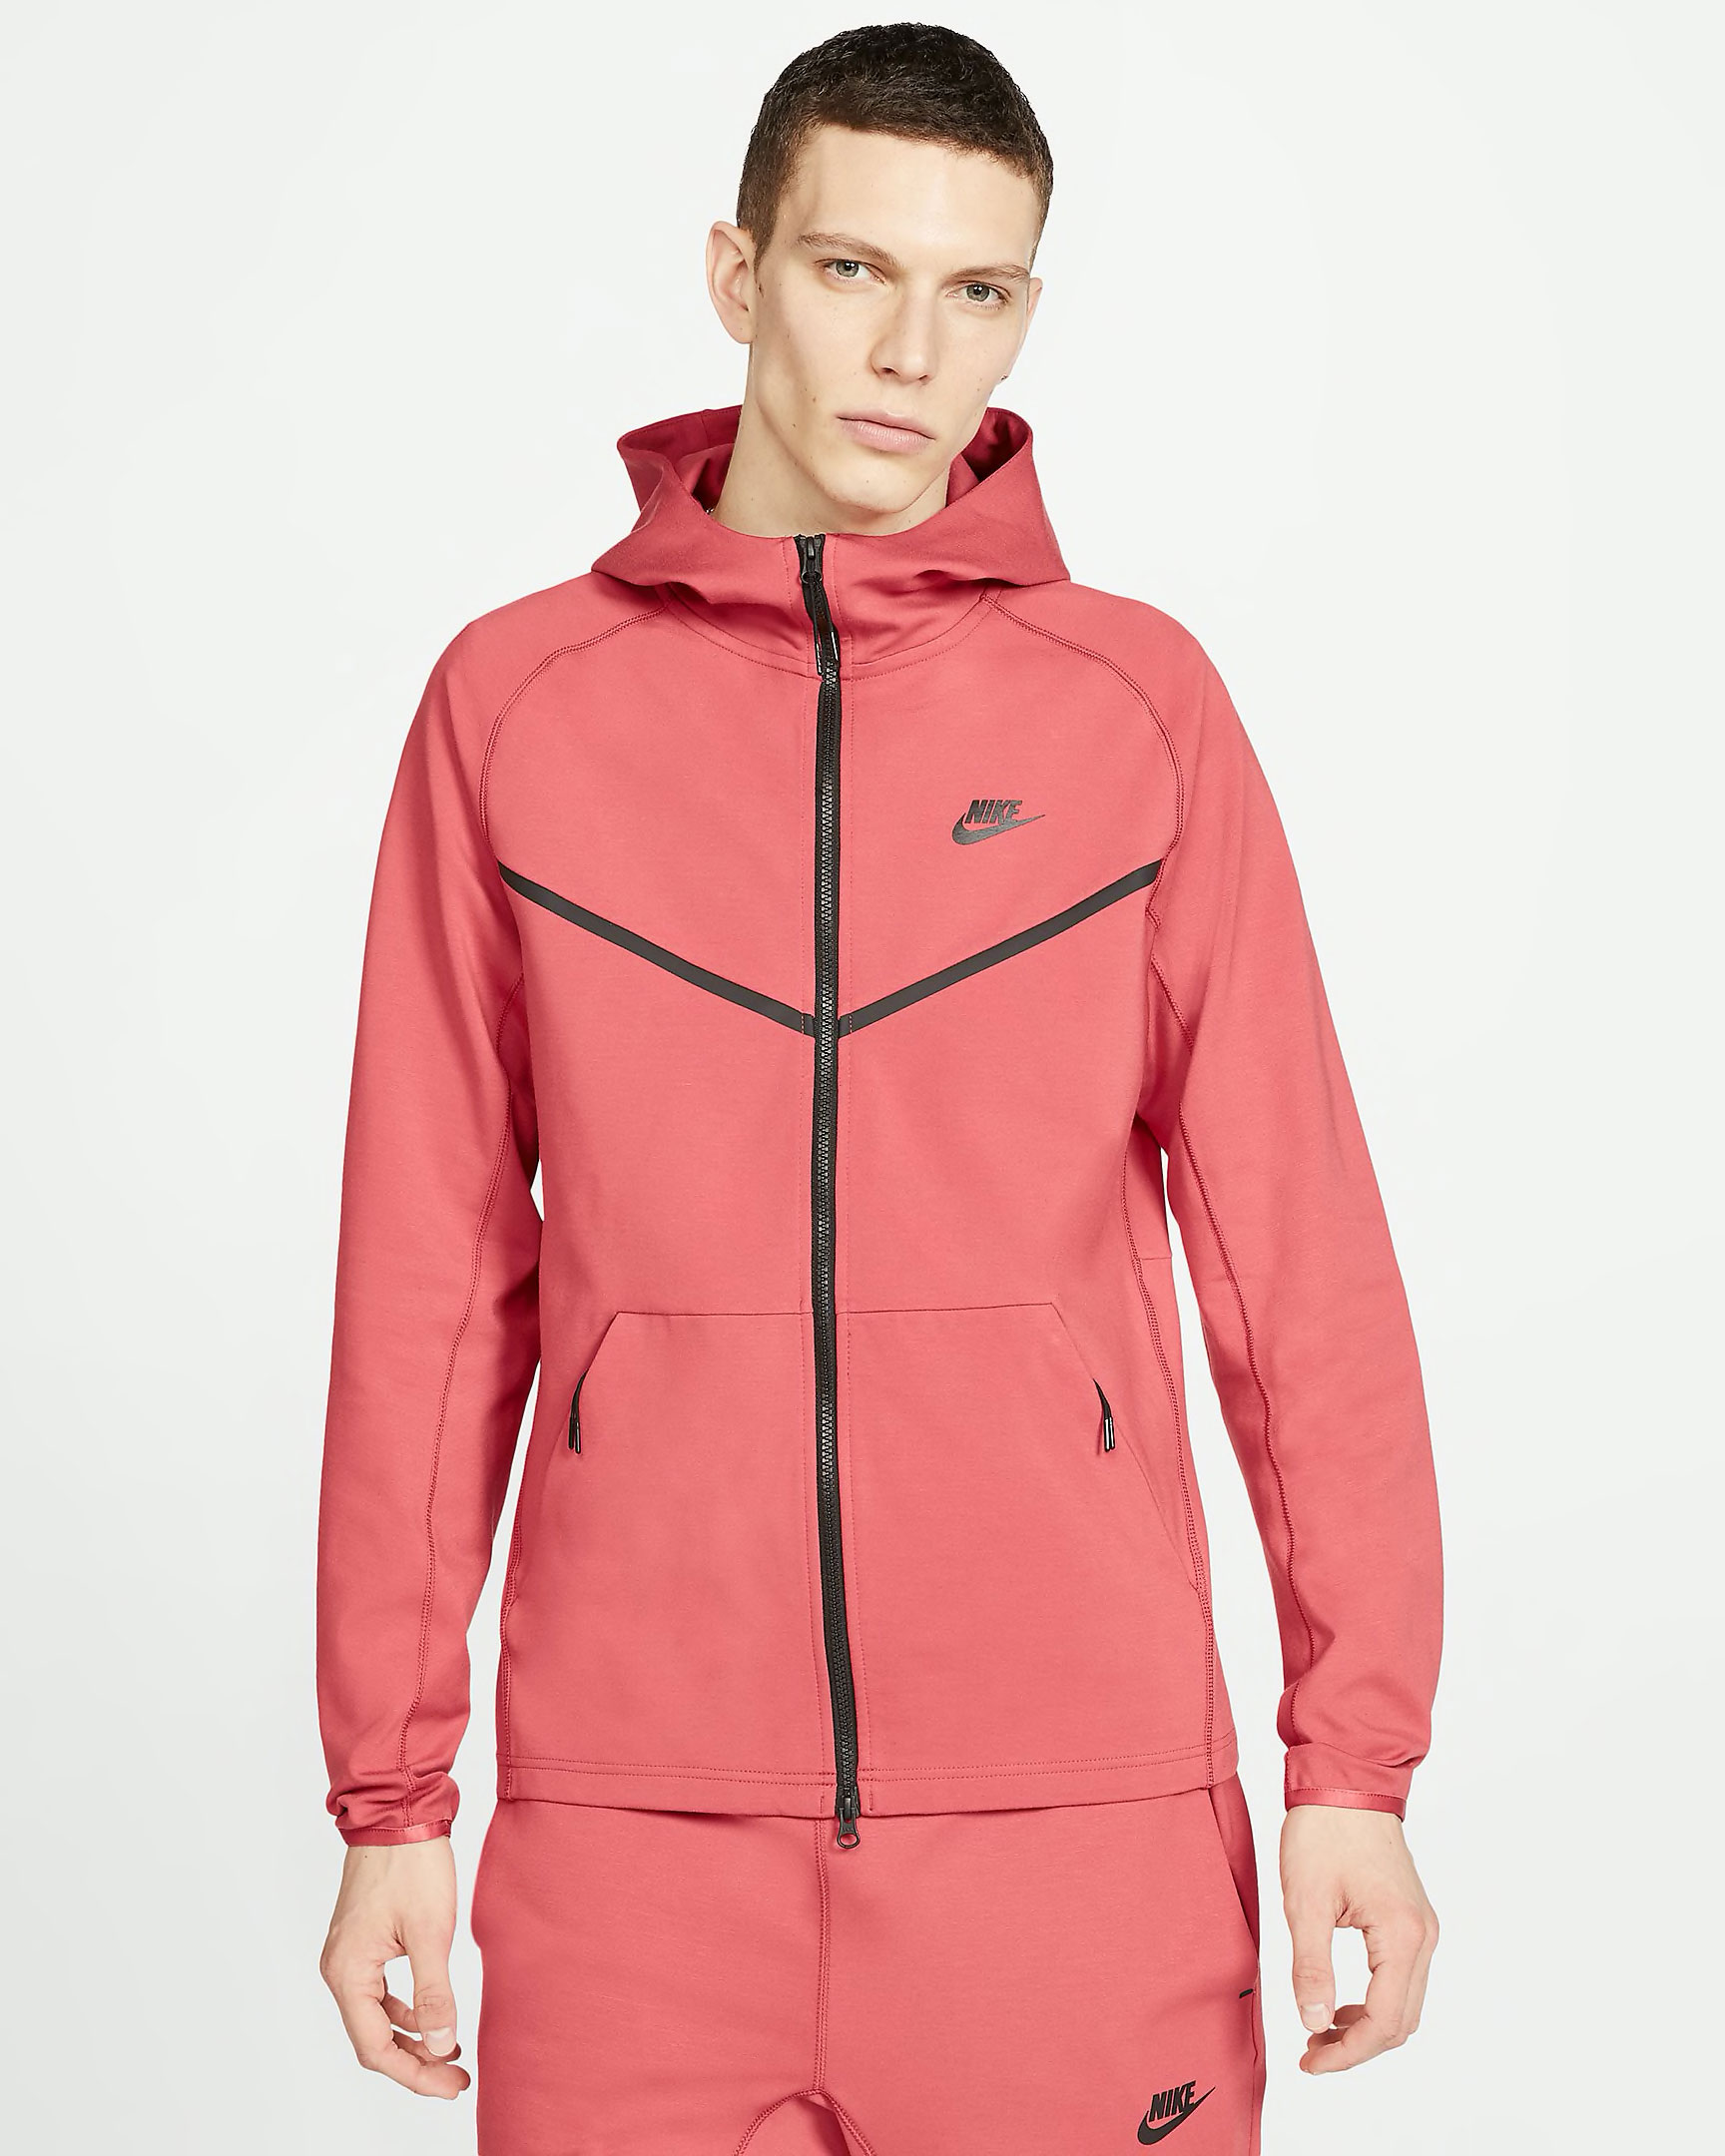 nike-infrared-tech-fleece-zip-hoodie